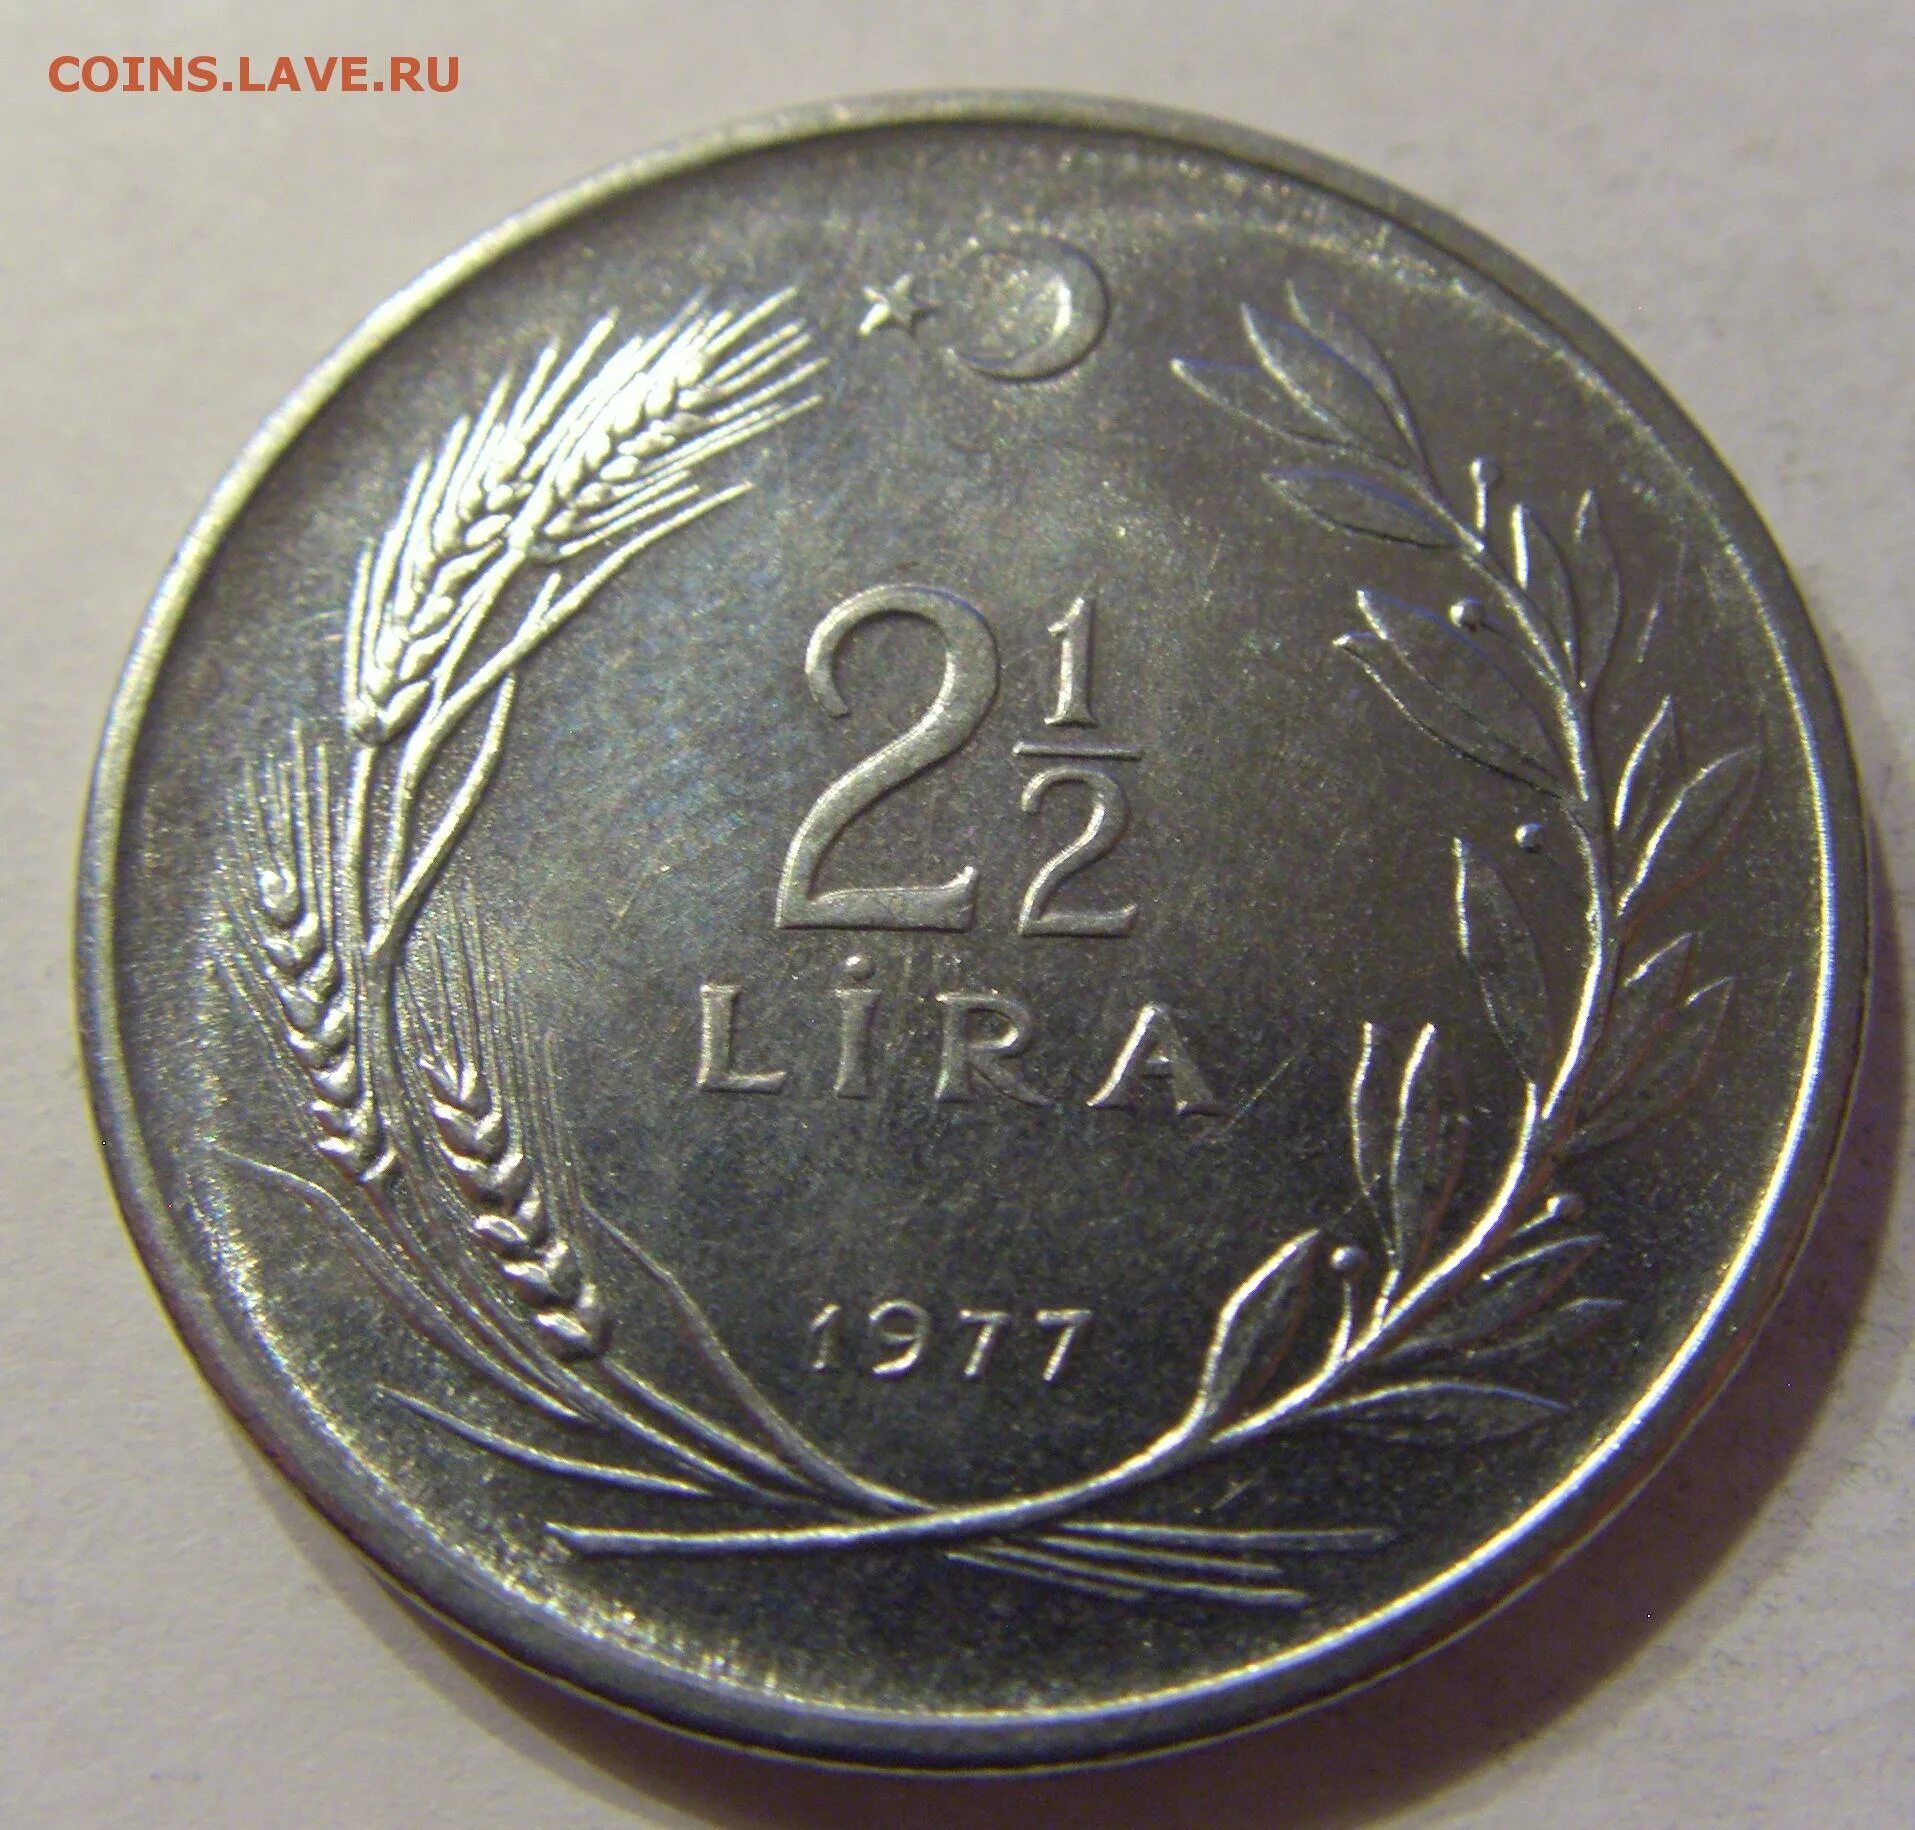 Турция 5 лир, 1977. 35 российских рублей